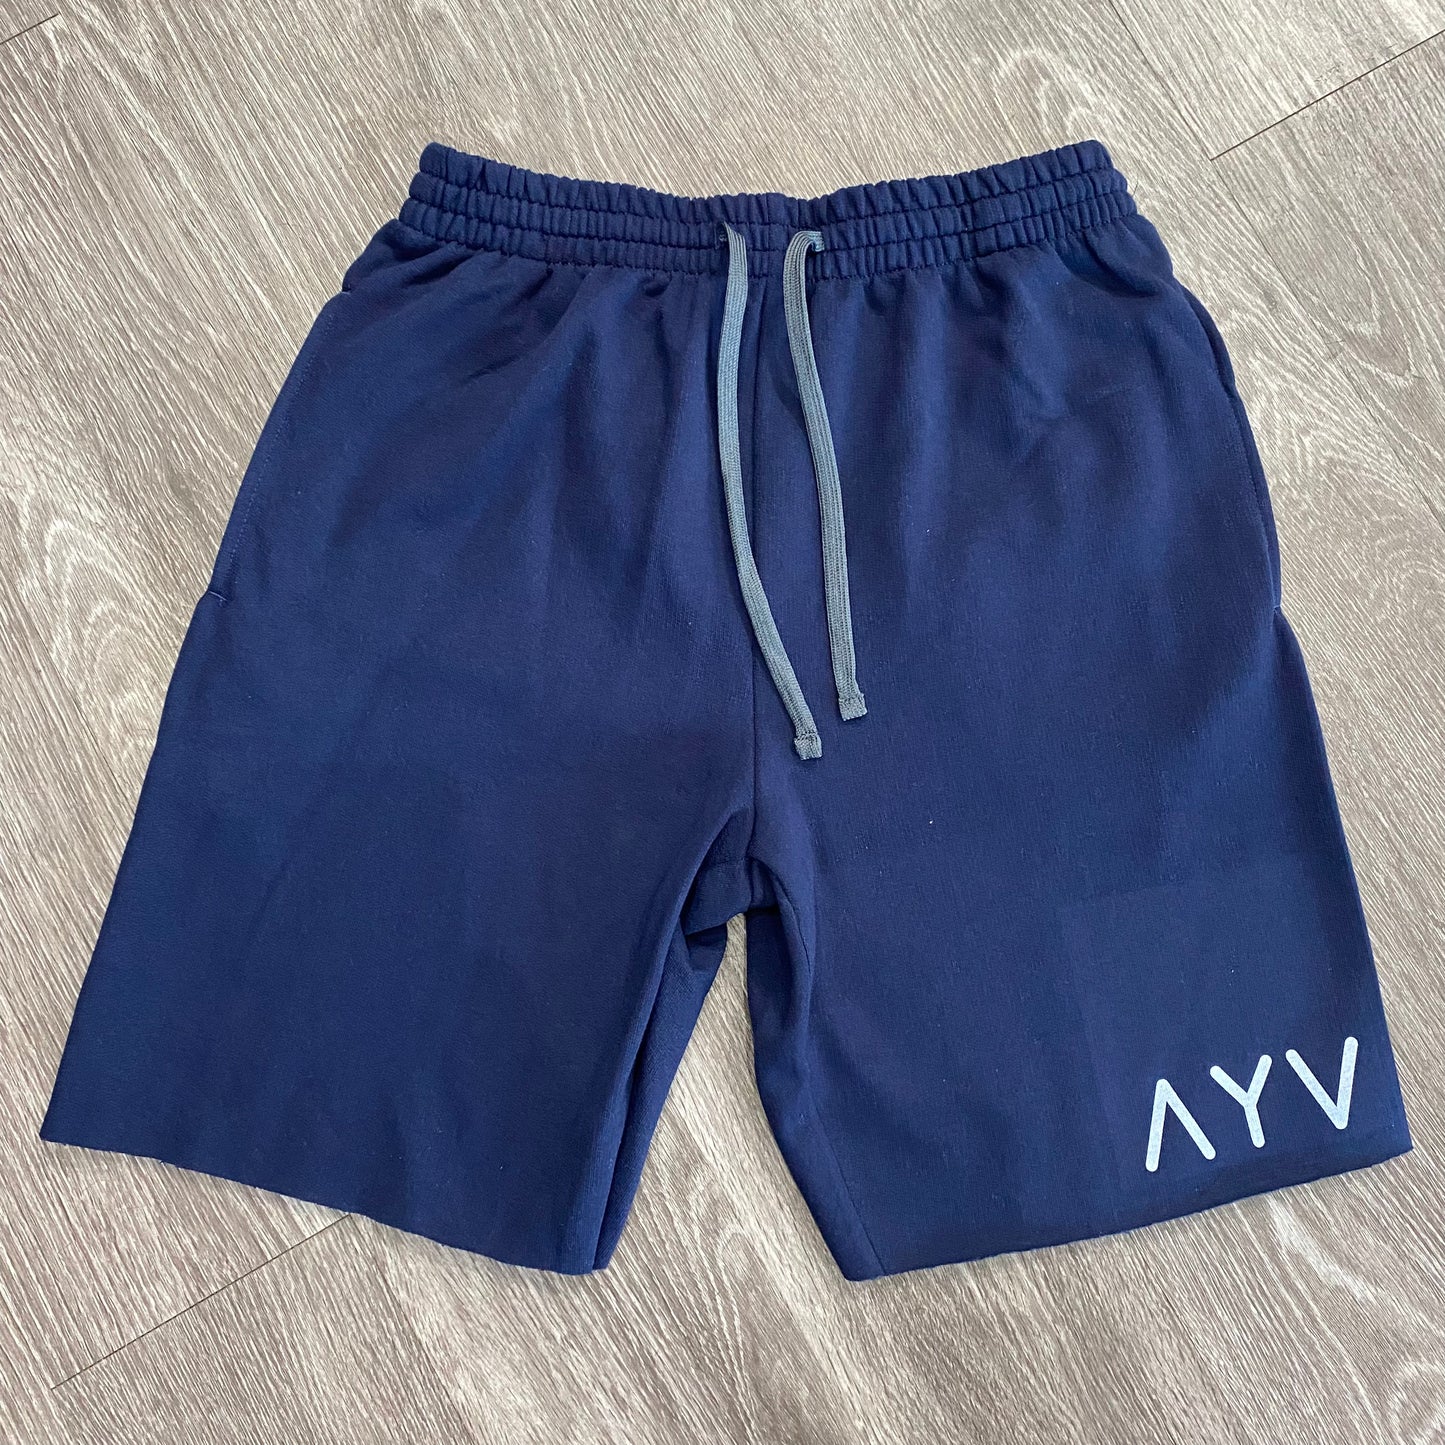 AYV “Basics” Cut Off shorts